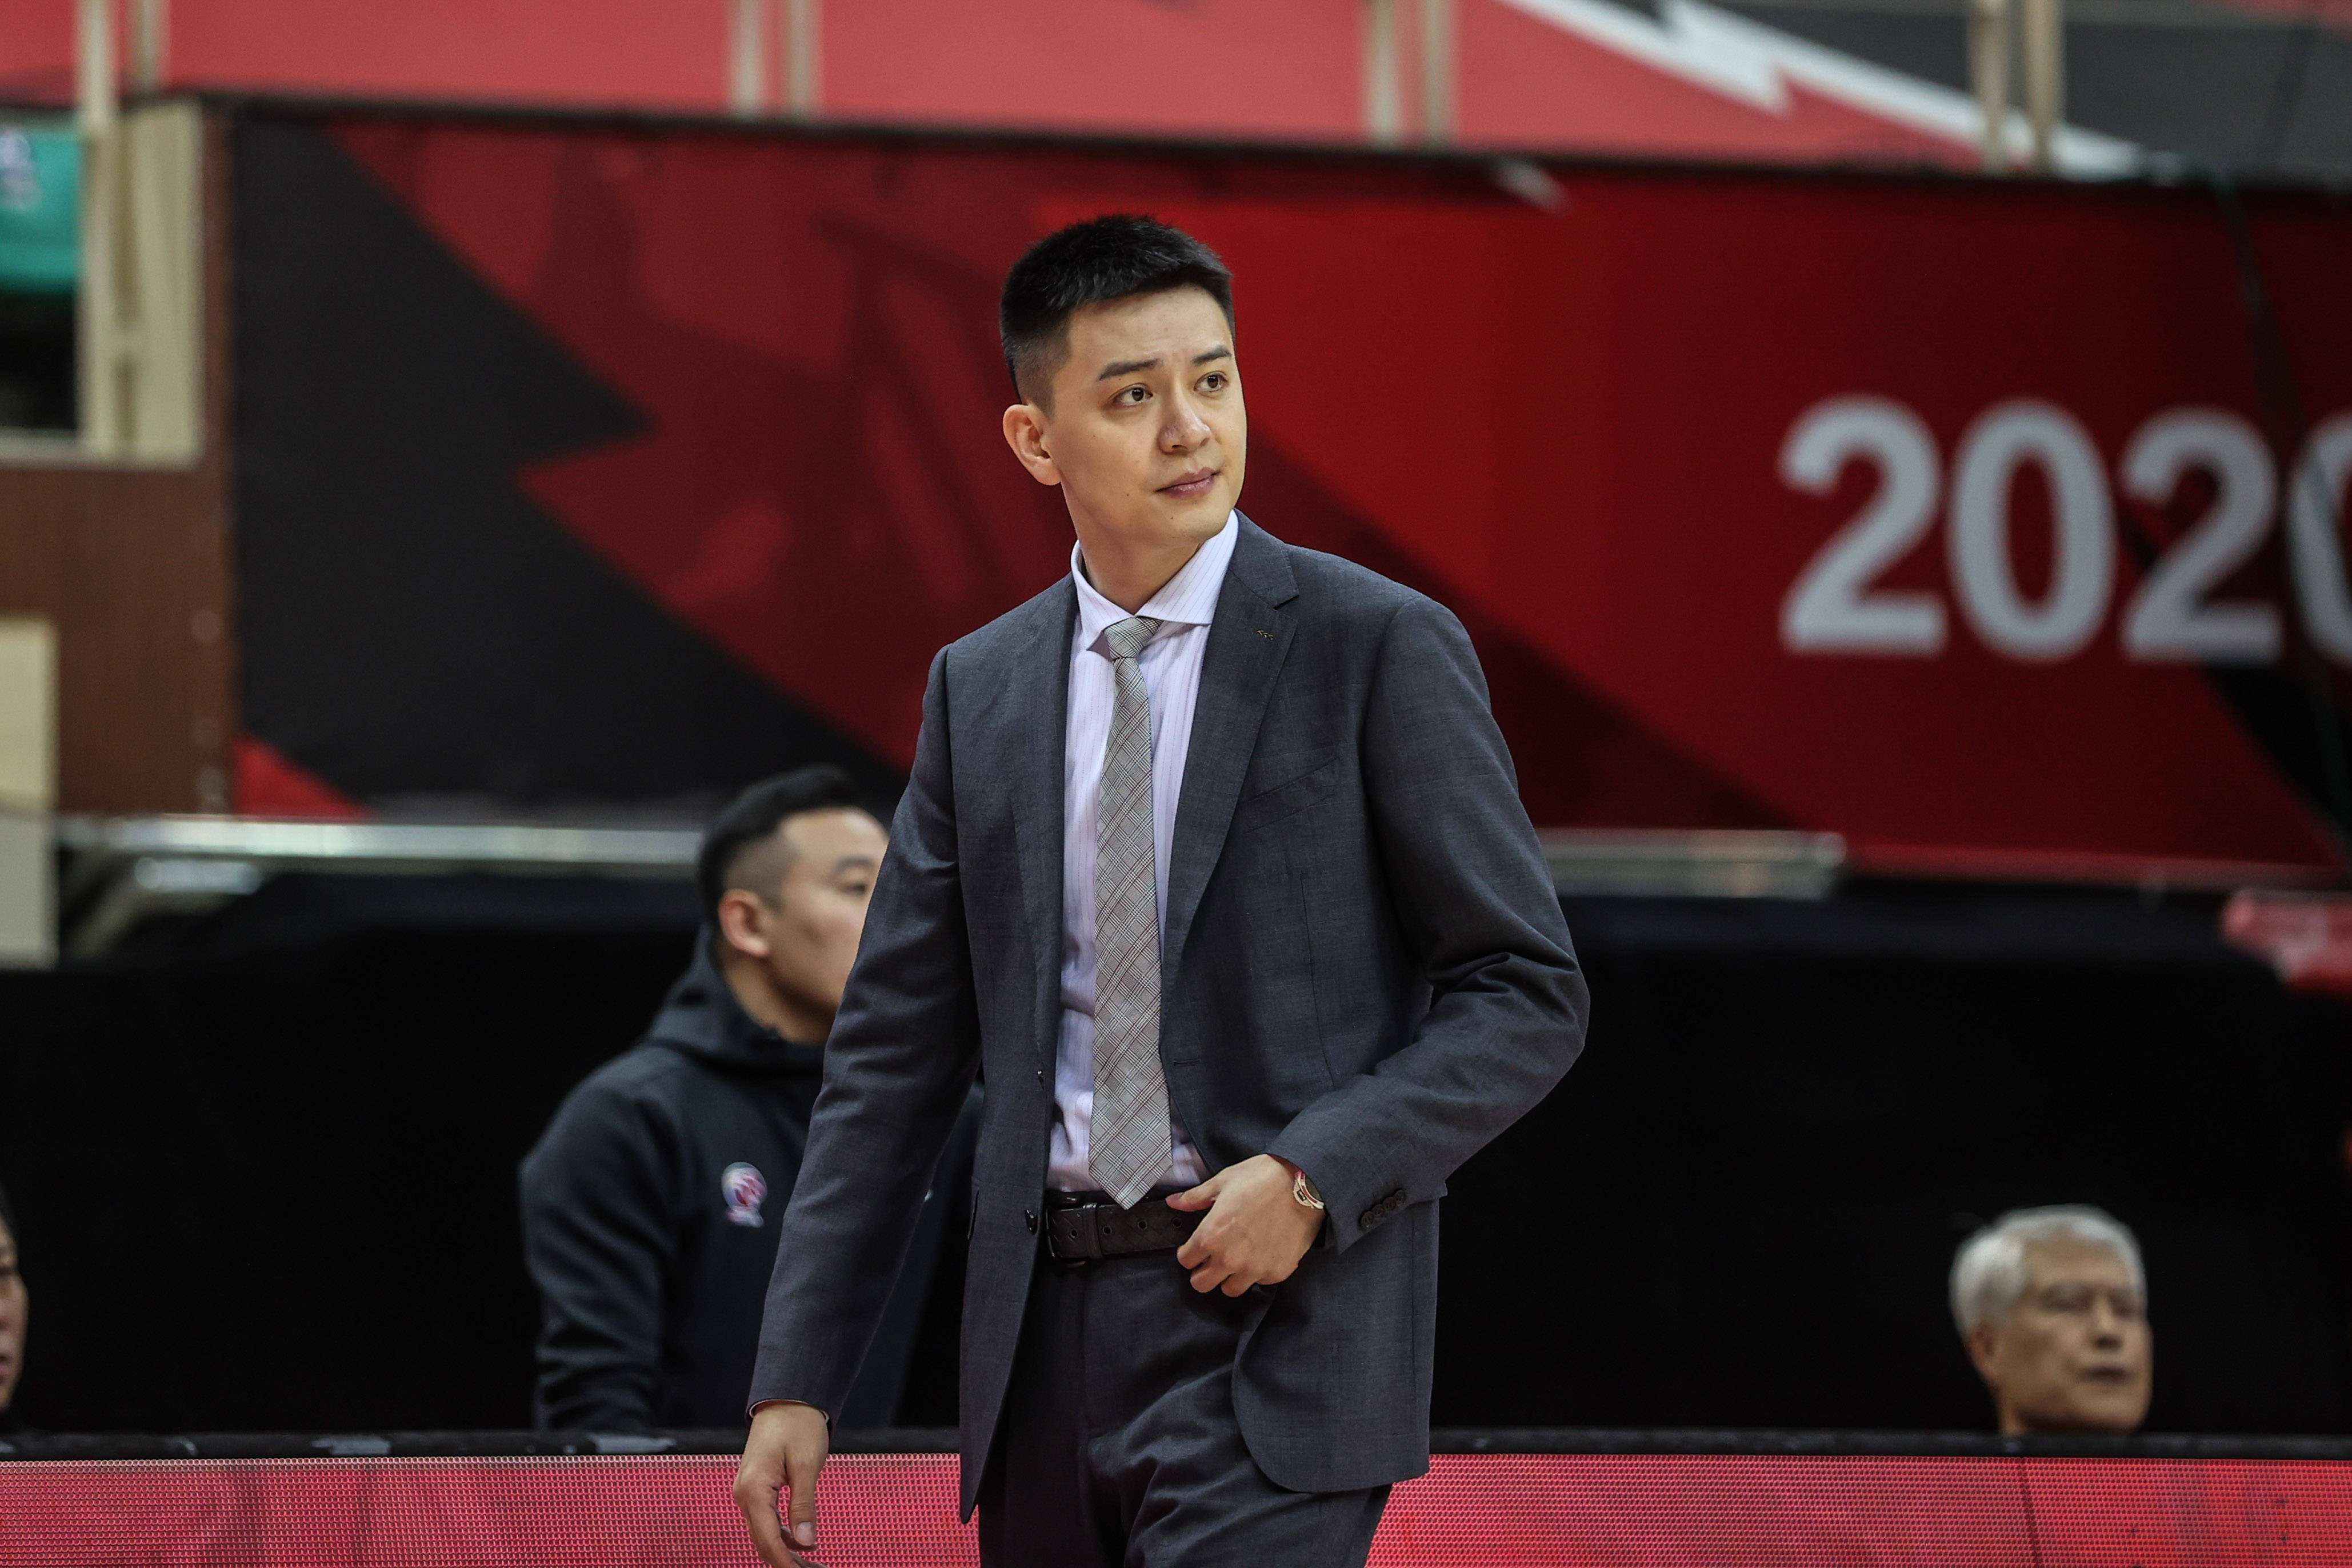 另外司职控球后卫,是现任的cba辽宁男篮主教练 ,并且是东北大学的常客